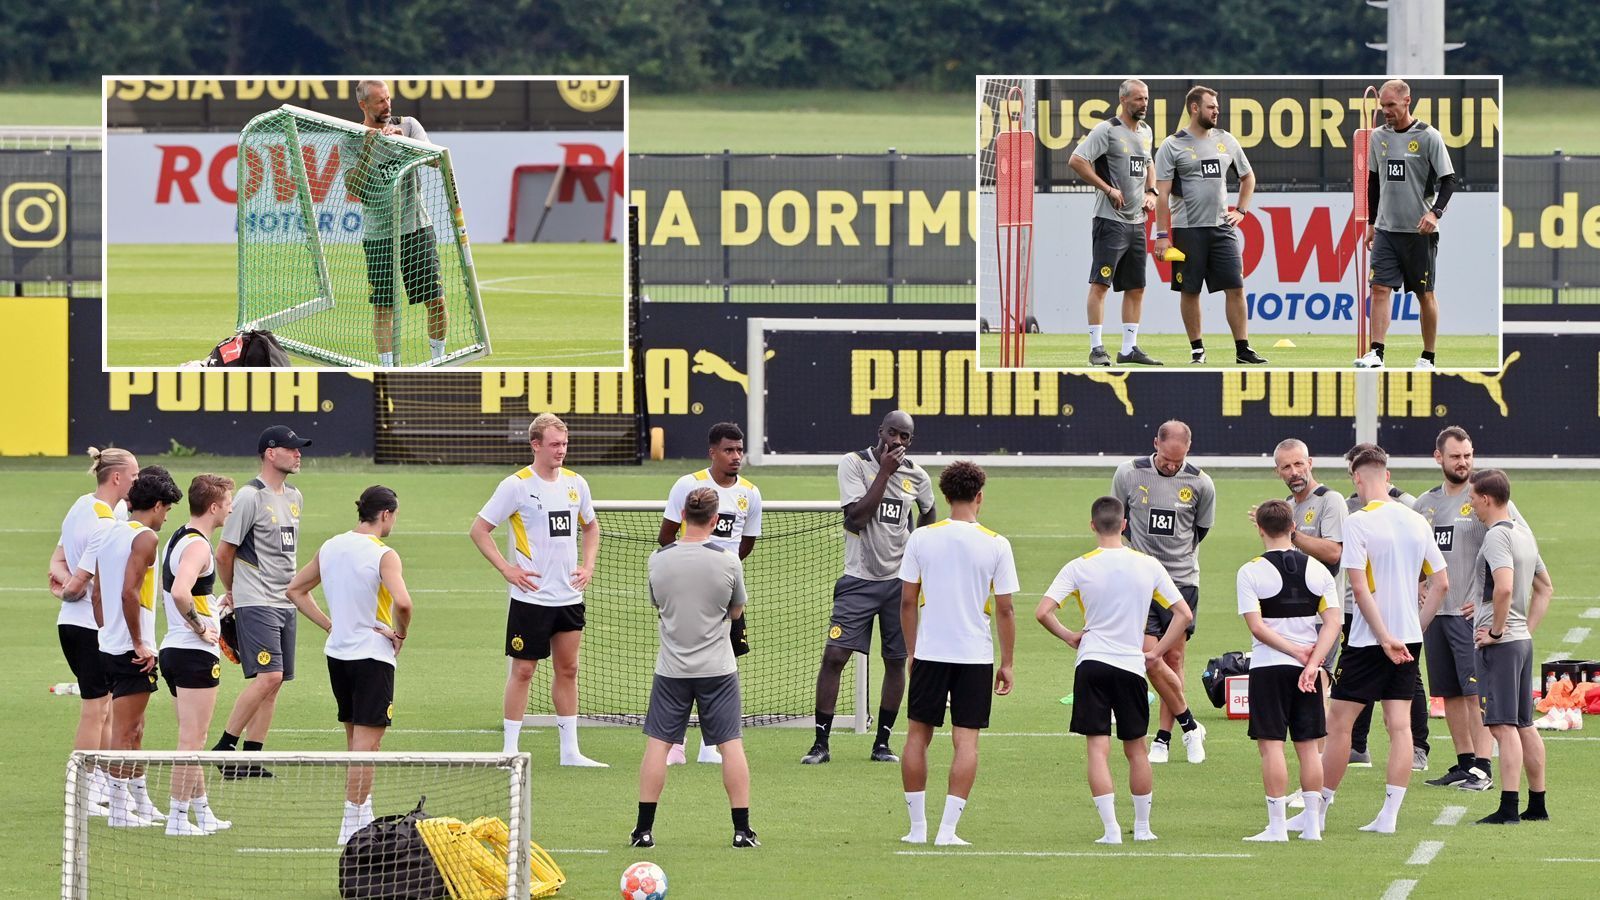 
                <strong>Borussia Dortmund: So lief das erste Training unter Marco Rose</strong><br>
                Bei Borussia Dortmund begann am 4. Juli 2021 eine neue Ära - jene von Trainer Marco Rose, der seine erste Einheit beim Revierklub leitete. ran.de zeigt, wie der Rose-Einstand verlief.
              